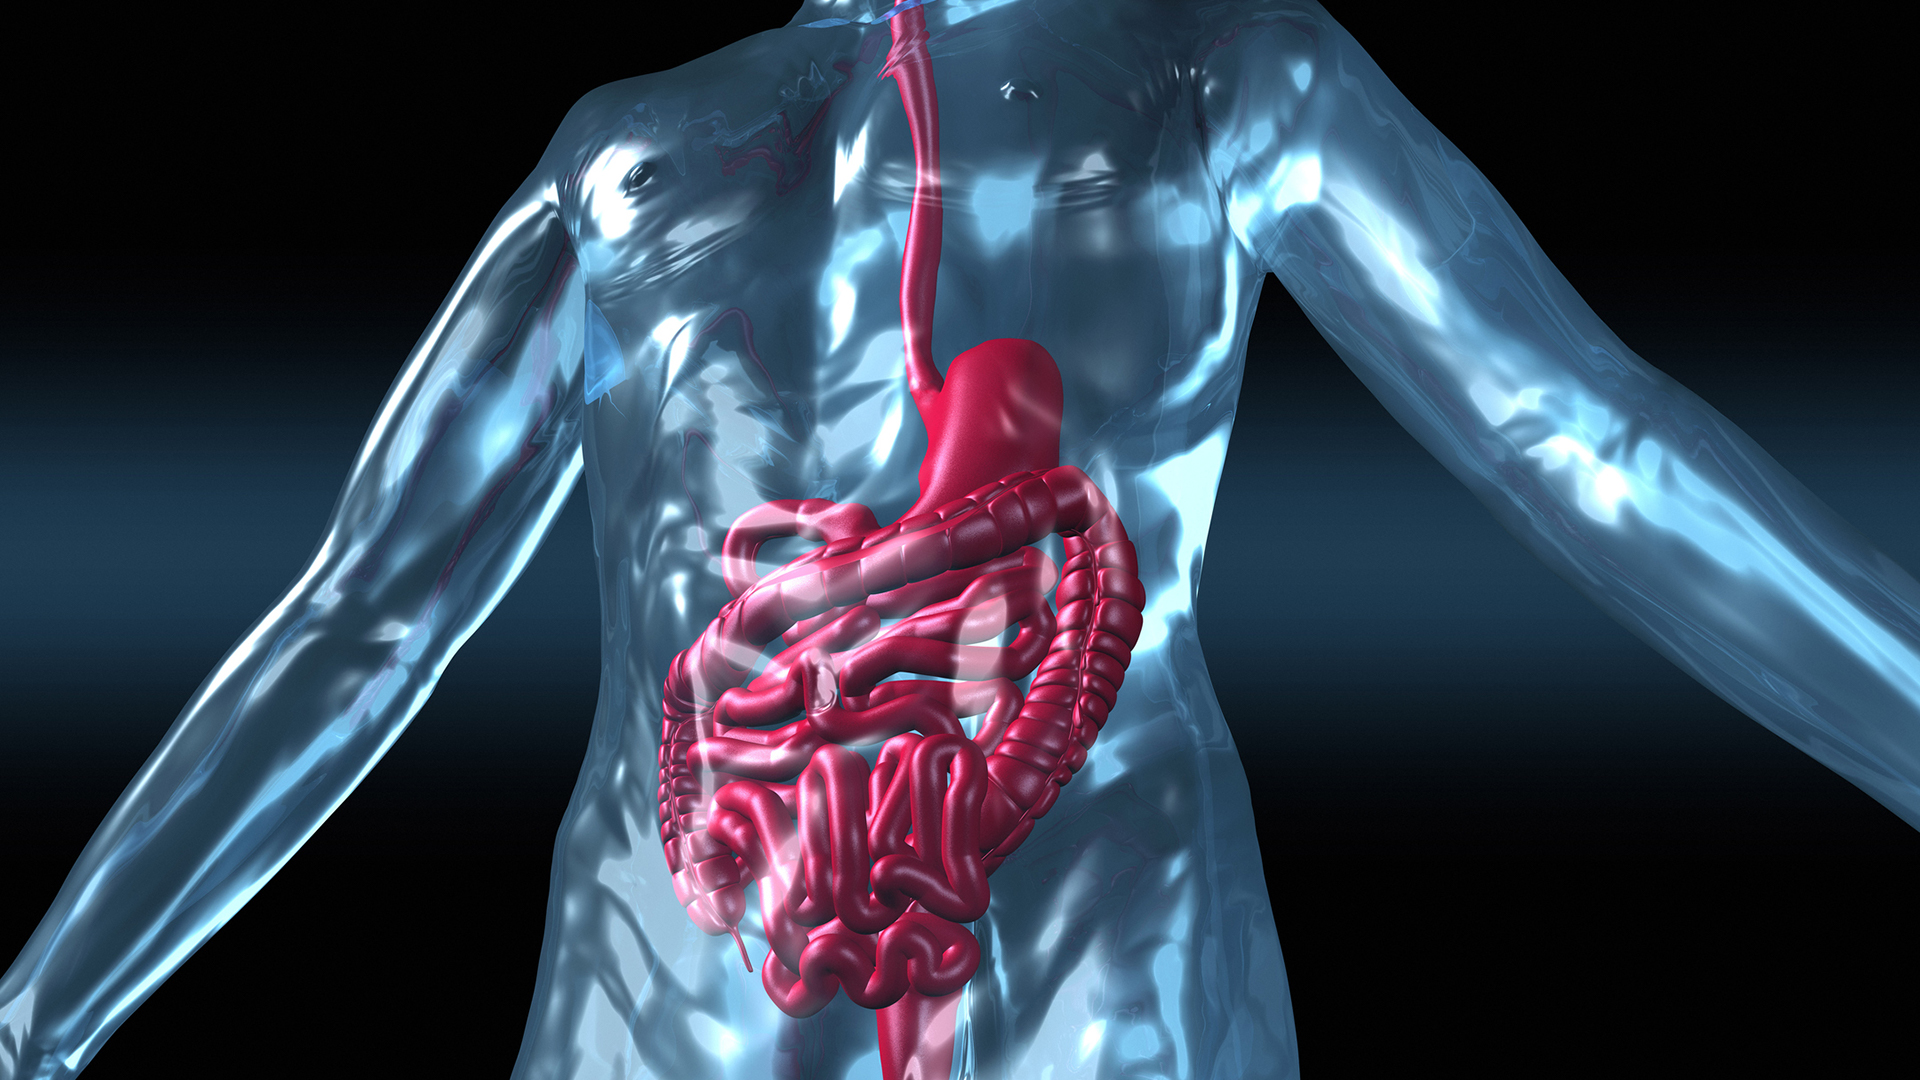 El trasplante fecal mostró alta eficacia contra las infecciones intestinales potencialmente mortales